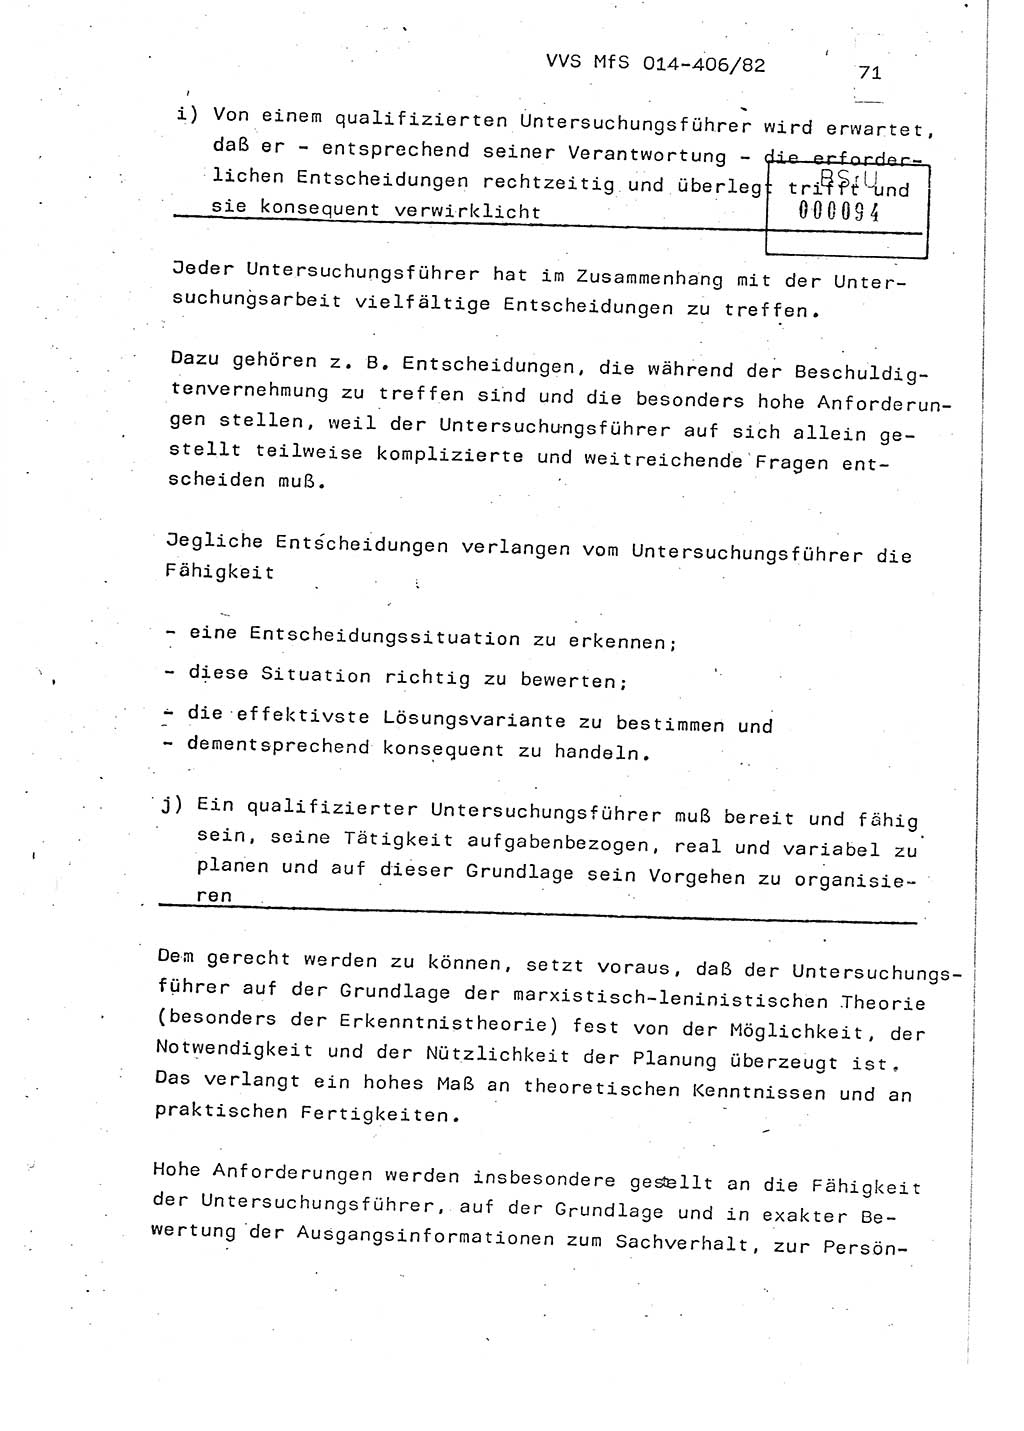 Lektion Ministerium für Staatssicherheit (MfS) [Deutsche Demokratische Republik (DDR)], Hauptabteilung (HA) Ⅸ, Vertrauliche Verschlußsache (VVS) o014-406/82, Berlin 1982, Seite 71 (Lekt. MfS DDR HA Ⅸ VVS o014-406/82 1982, S. 71)